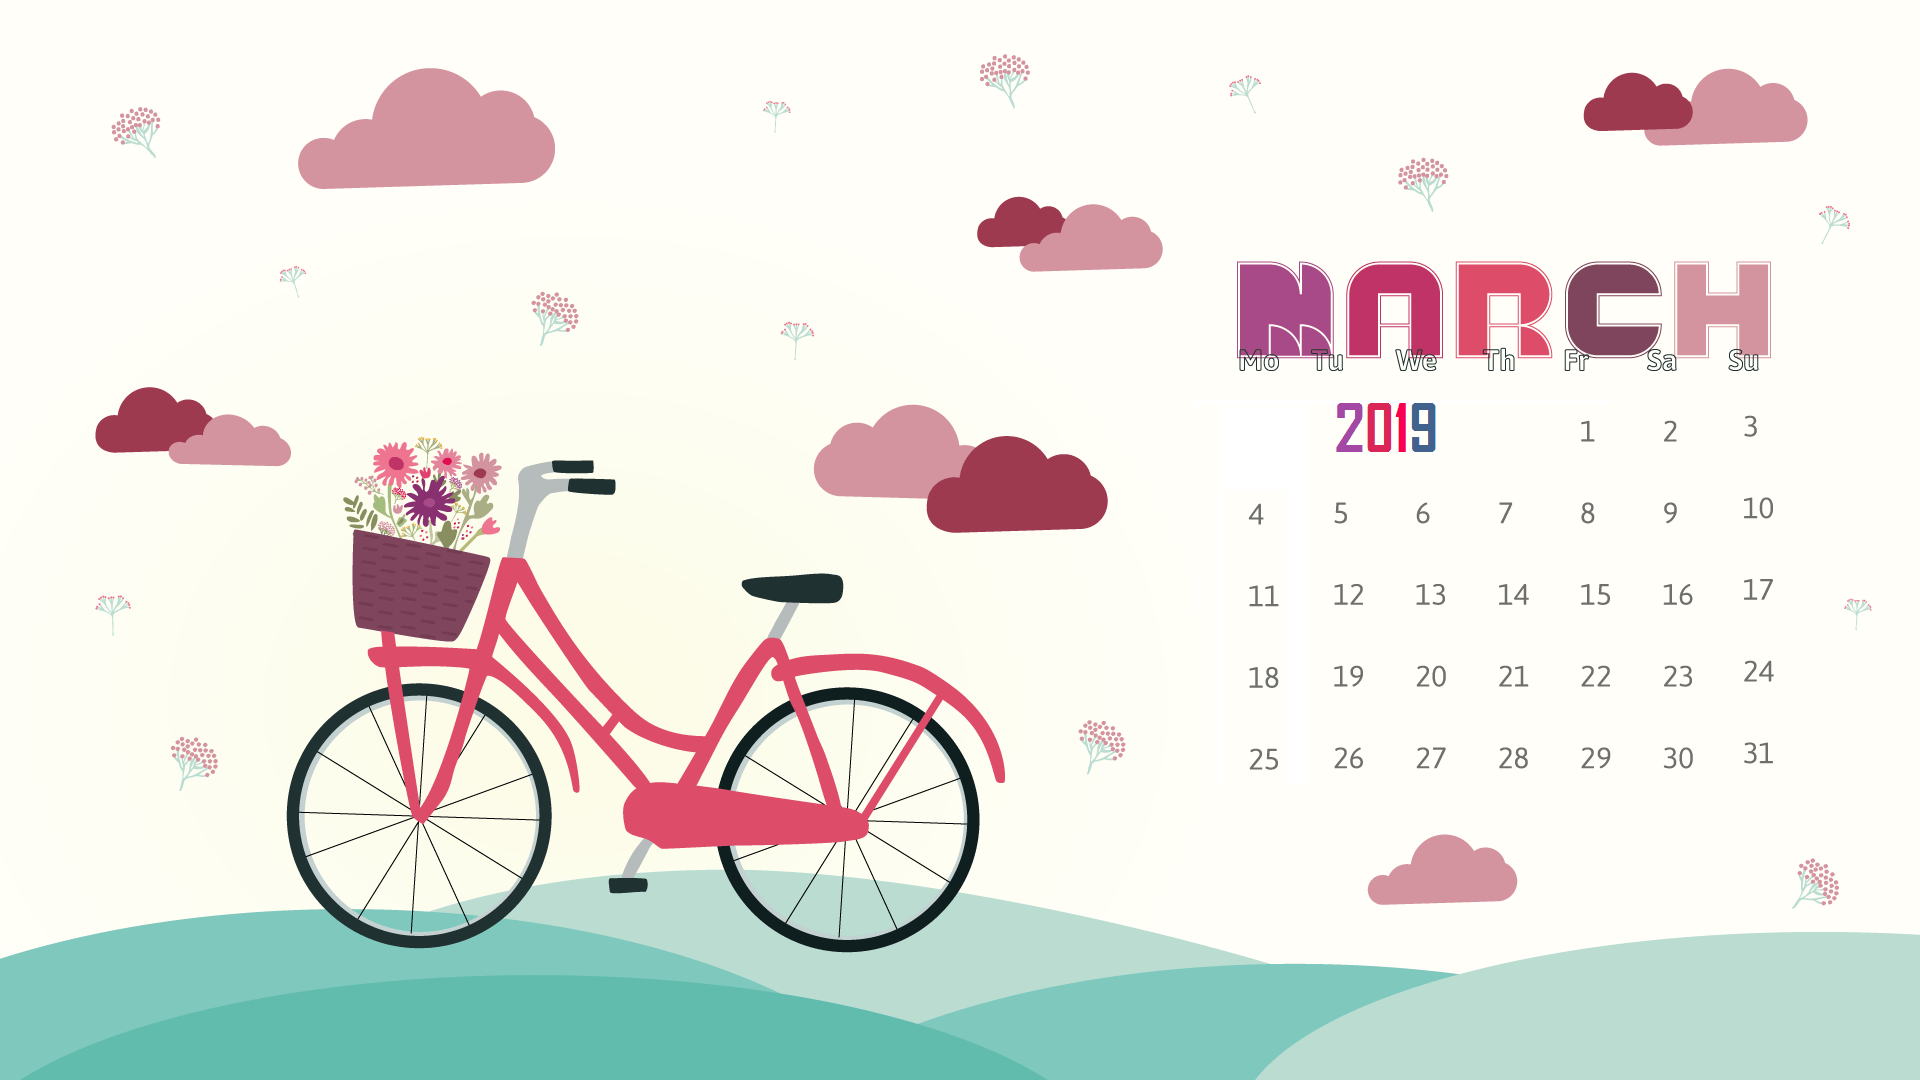 March 2019 Calendar Wallpaper. Free March 2019 Calendar